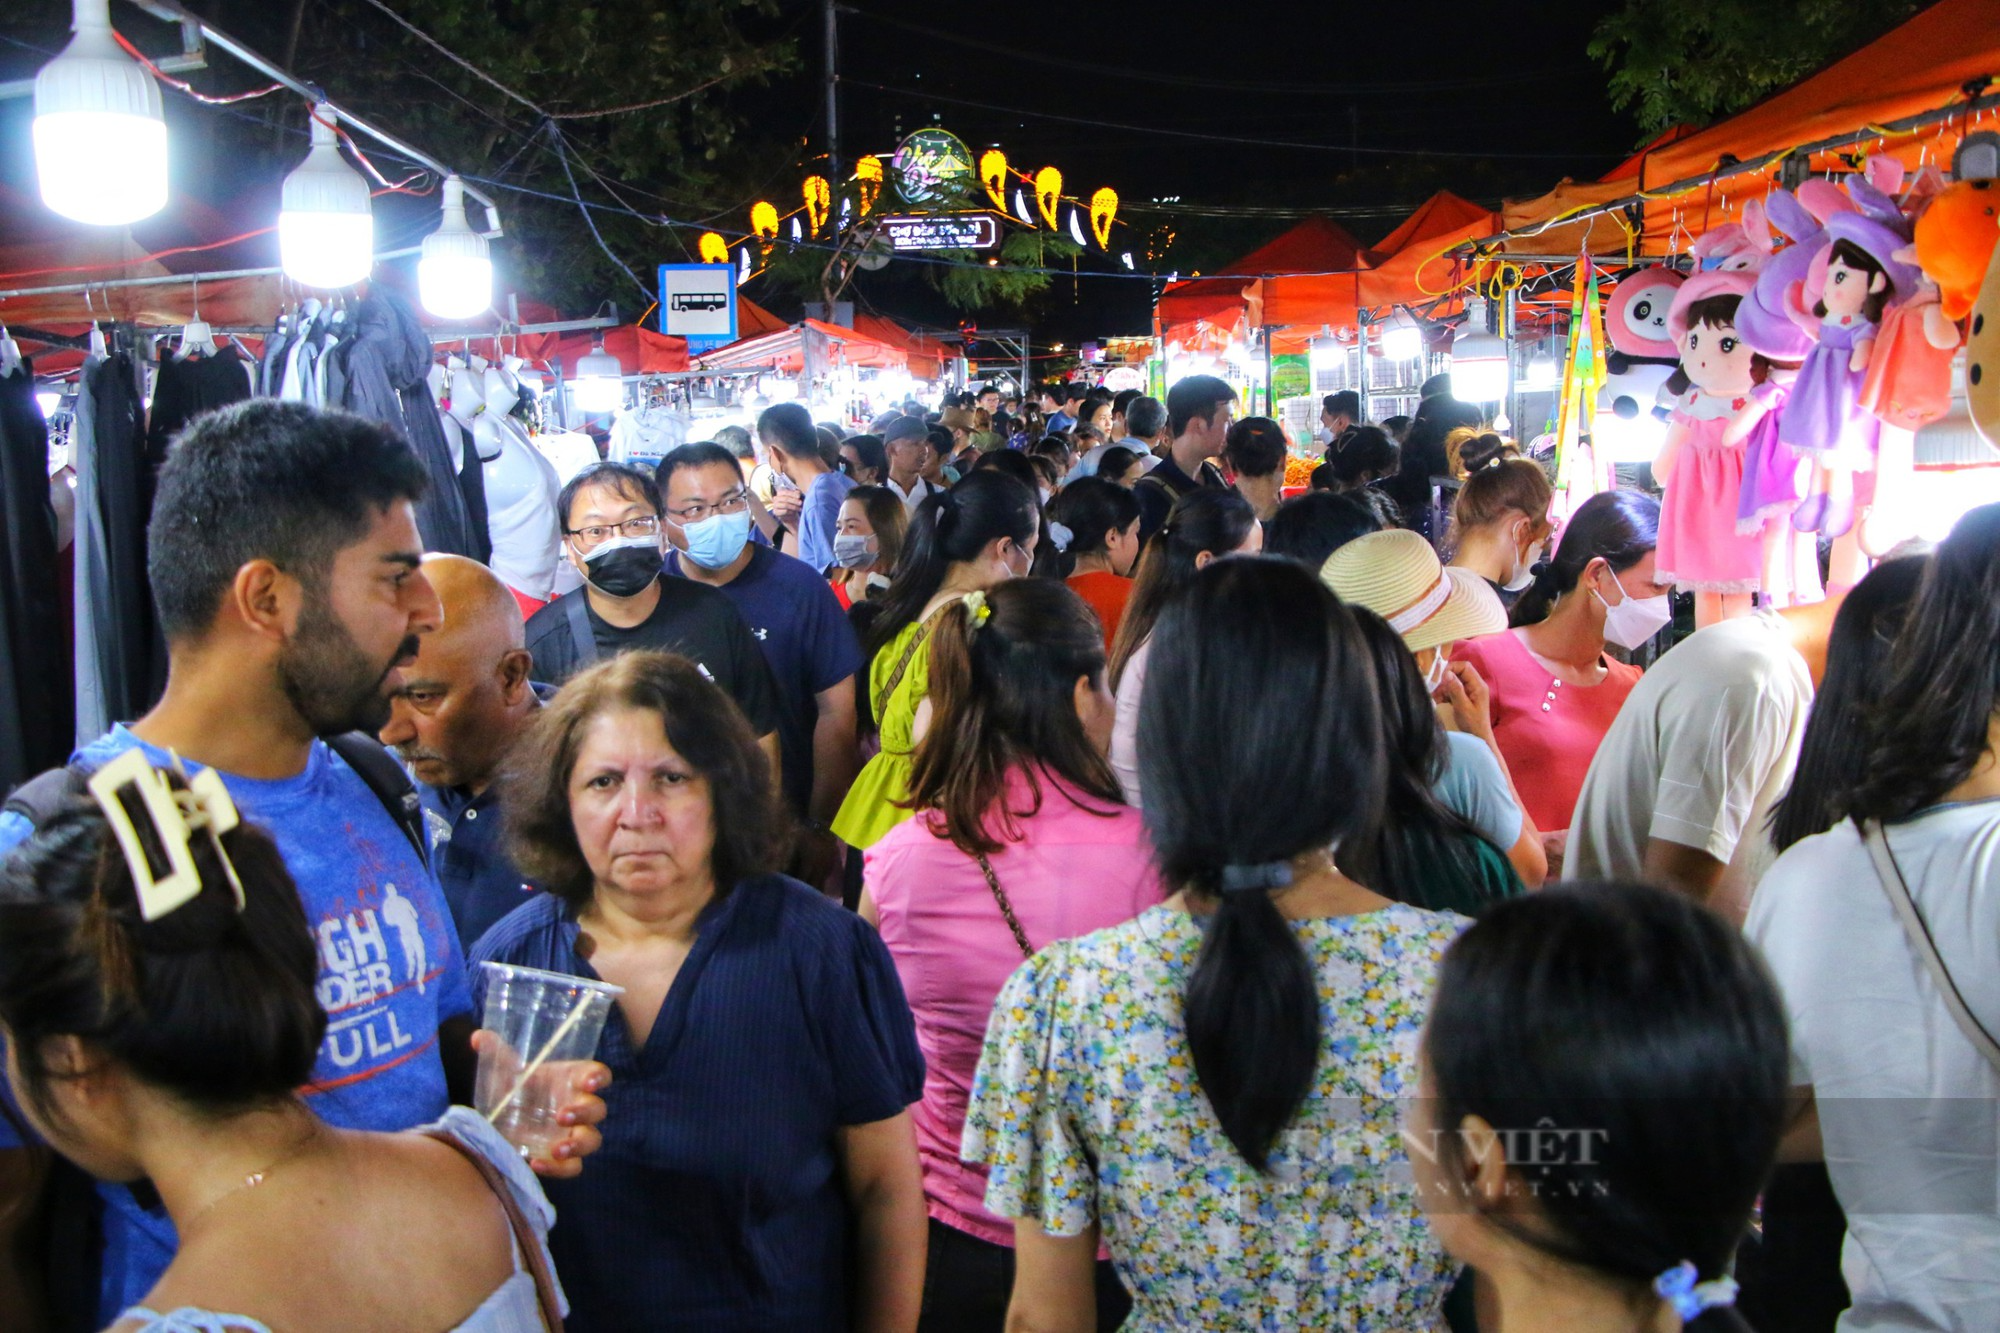 Chợ đêm lớn nhất Đà Nẵng chật kín lối ra vào dịp lễ 30/4 - 1/5 - Ảnh 1.